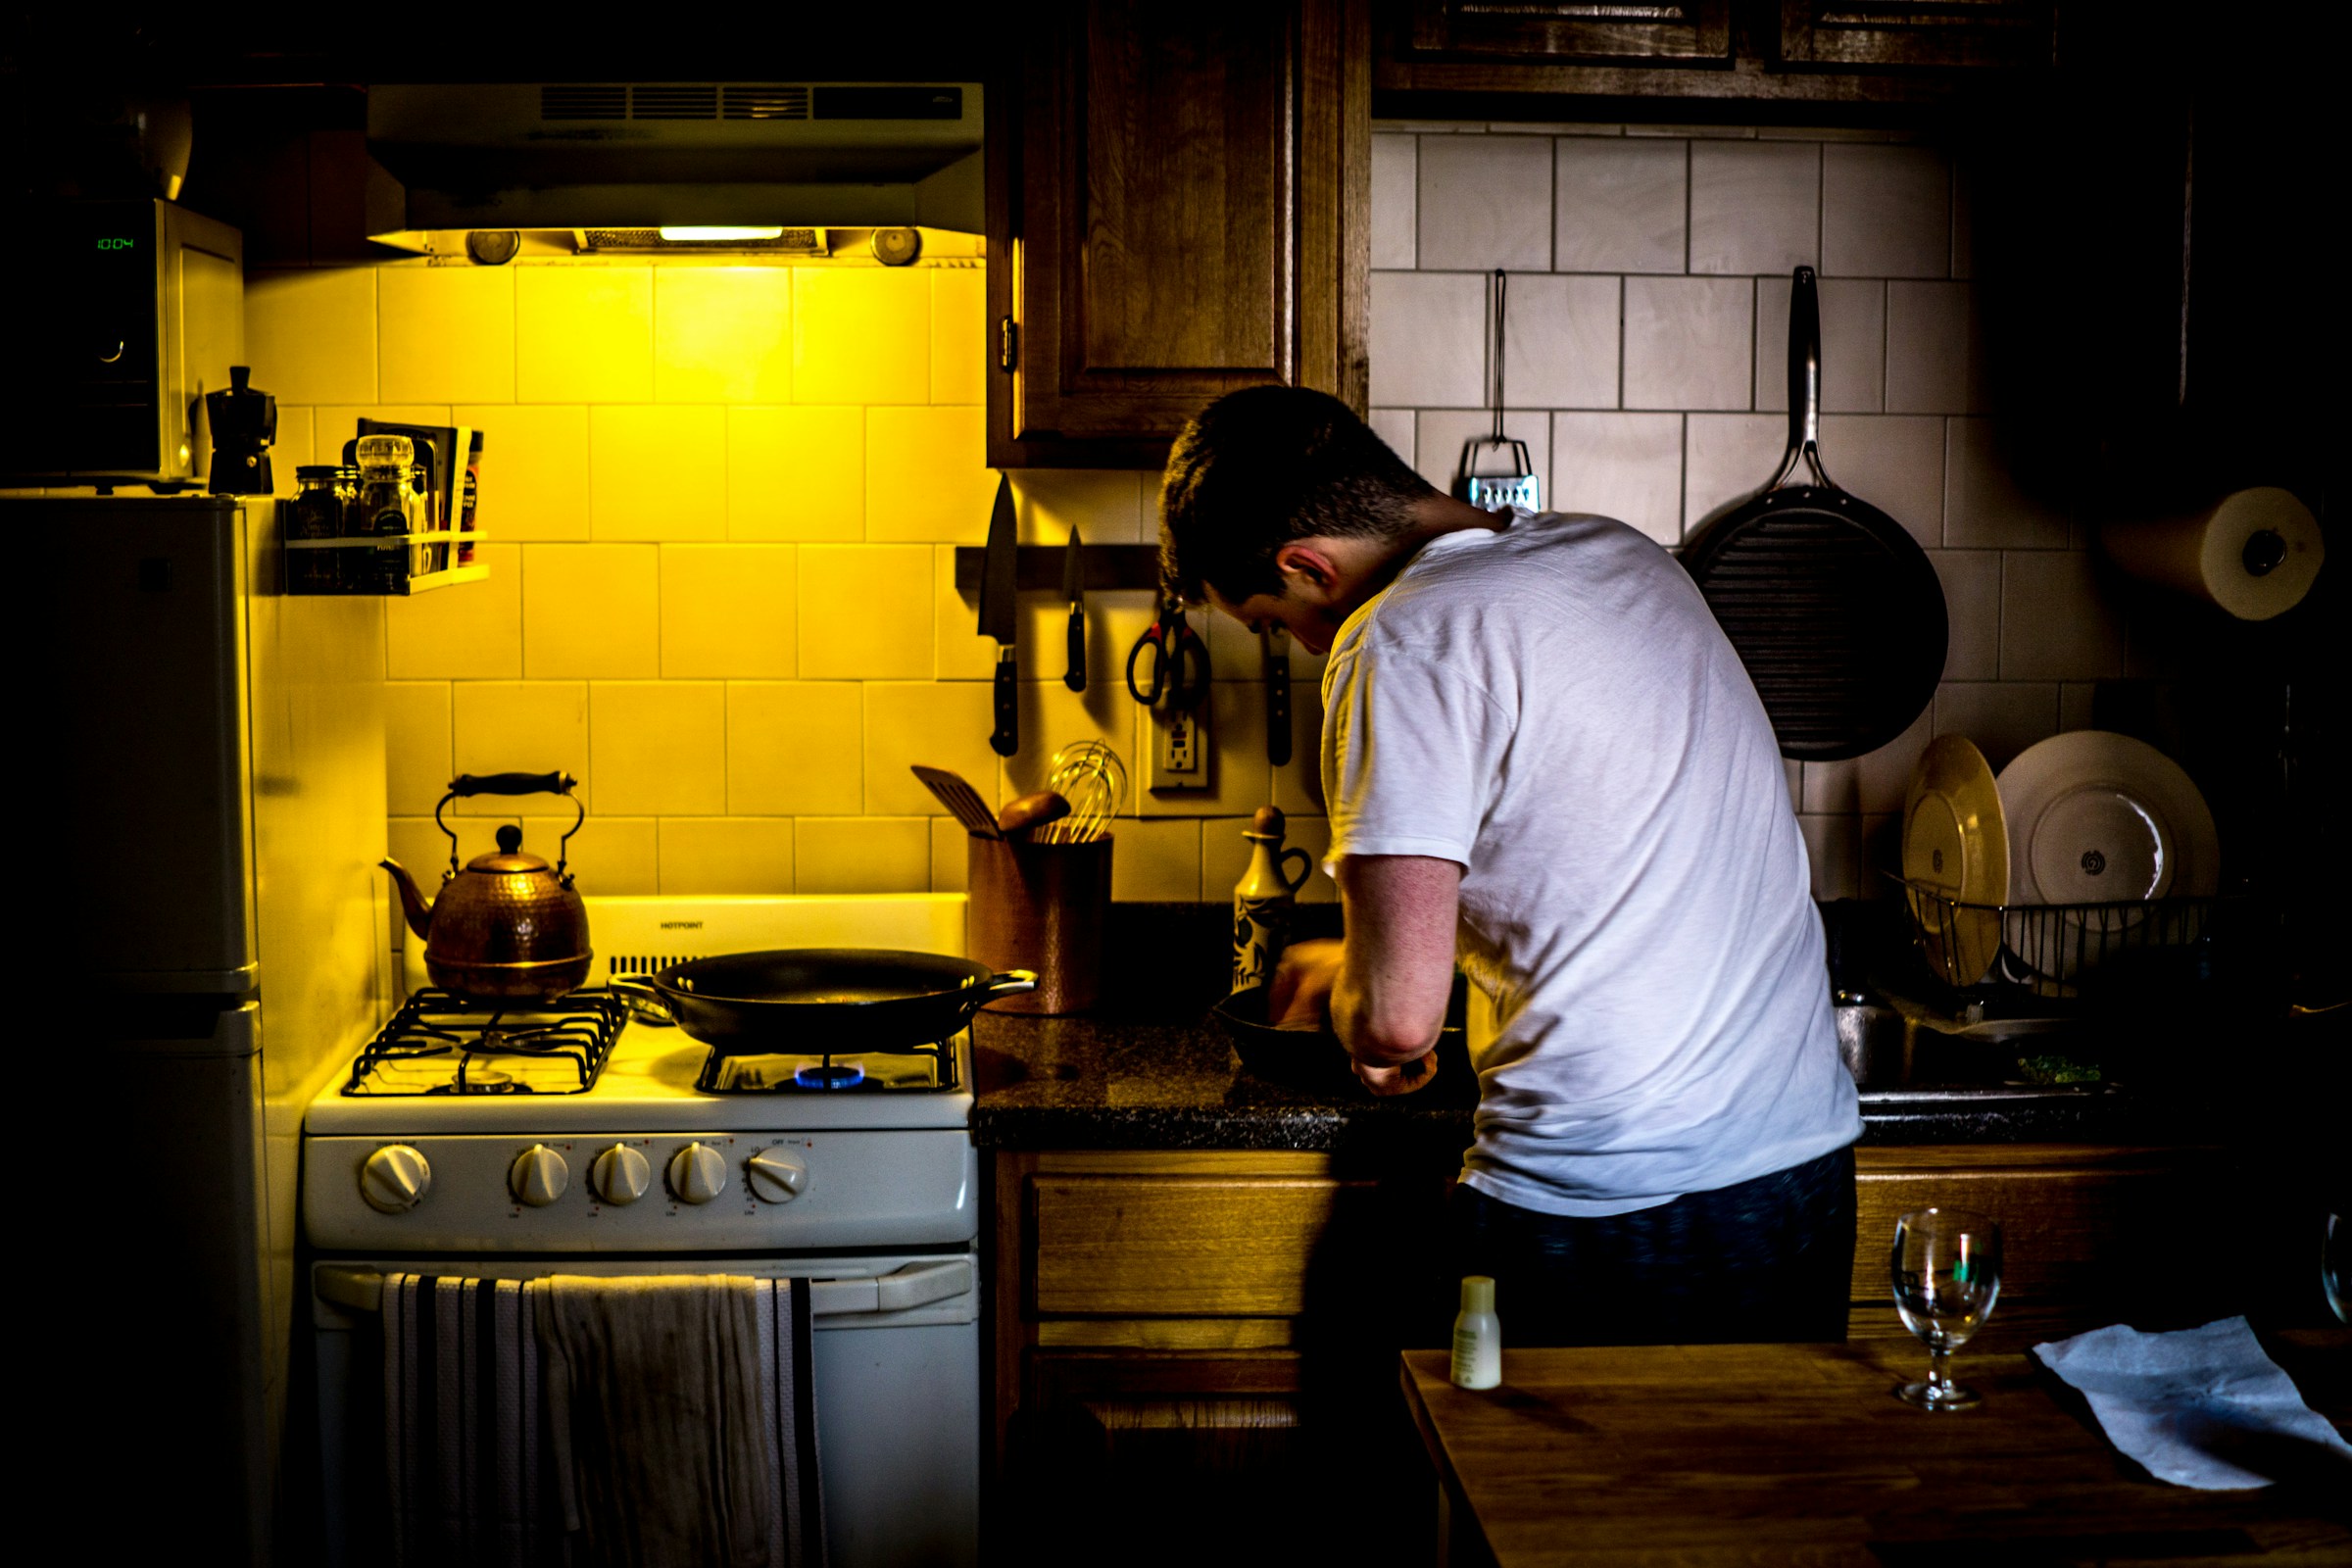 A man in the kitchen | Source: Unsplash